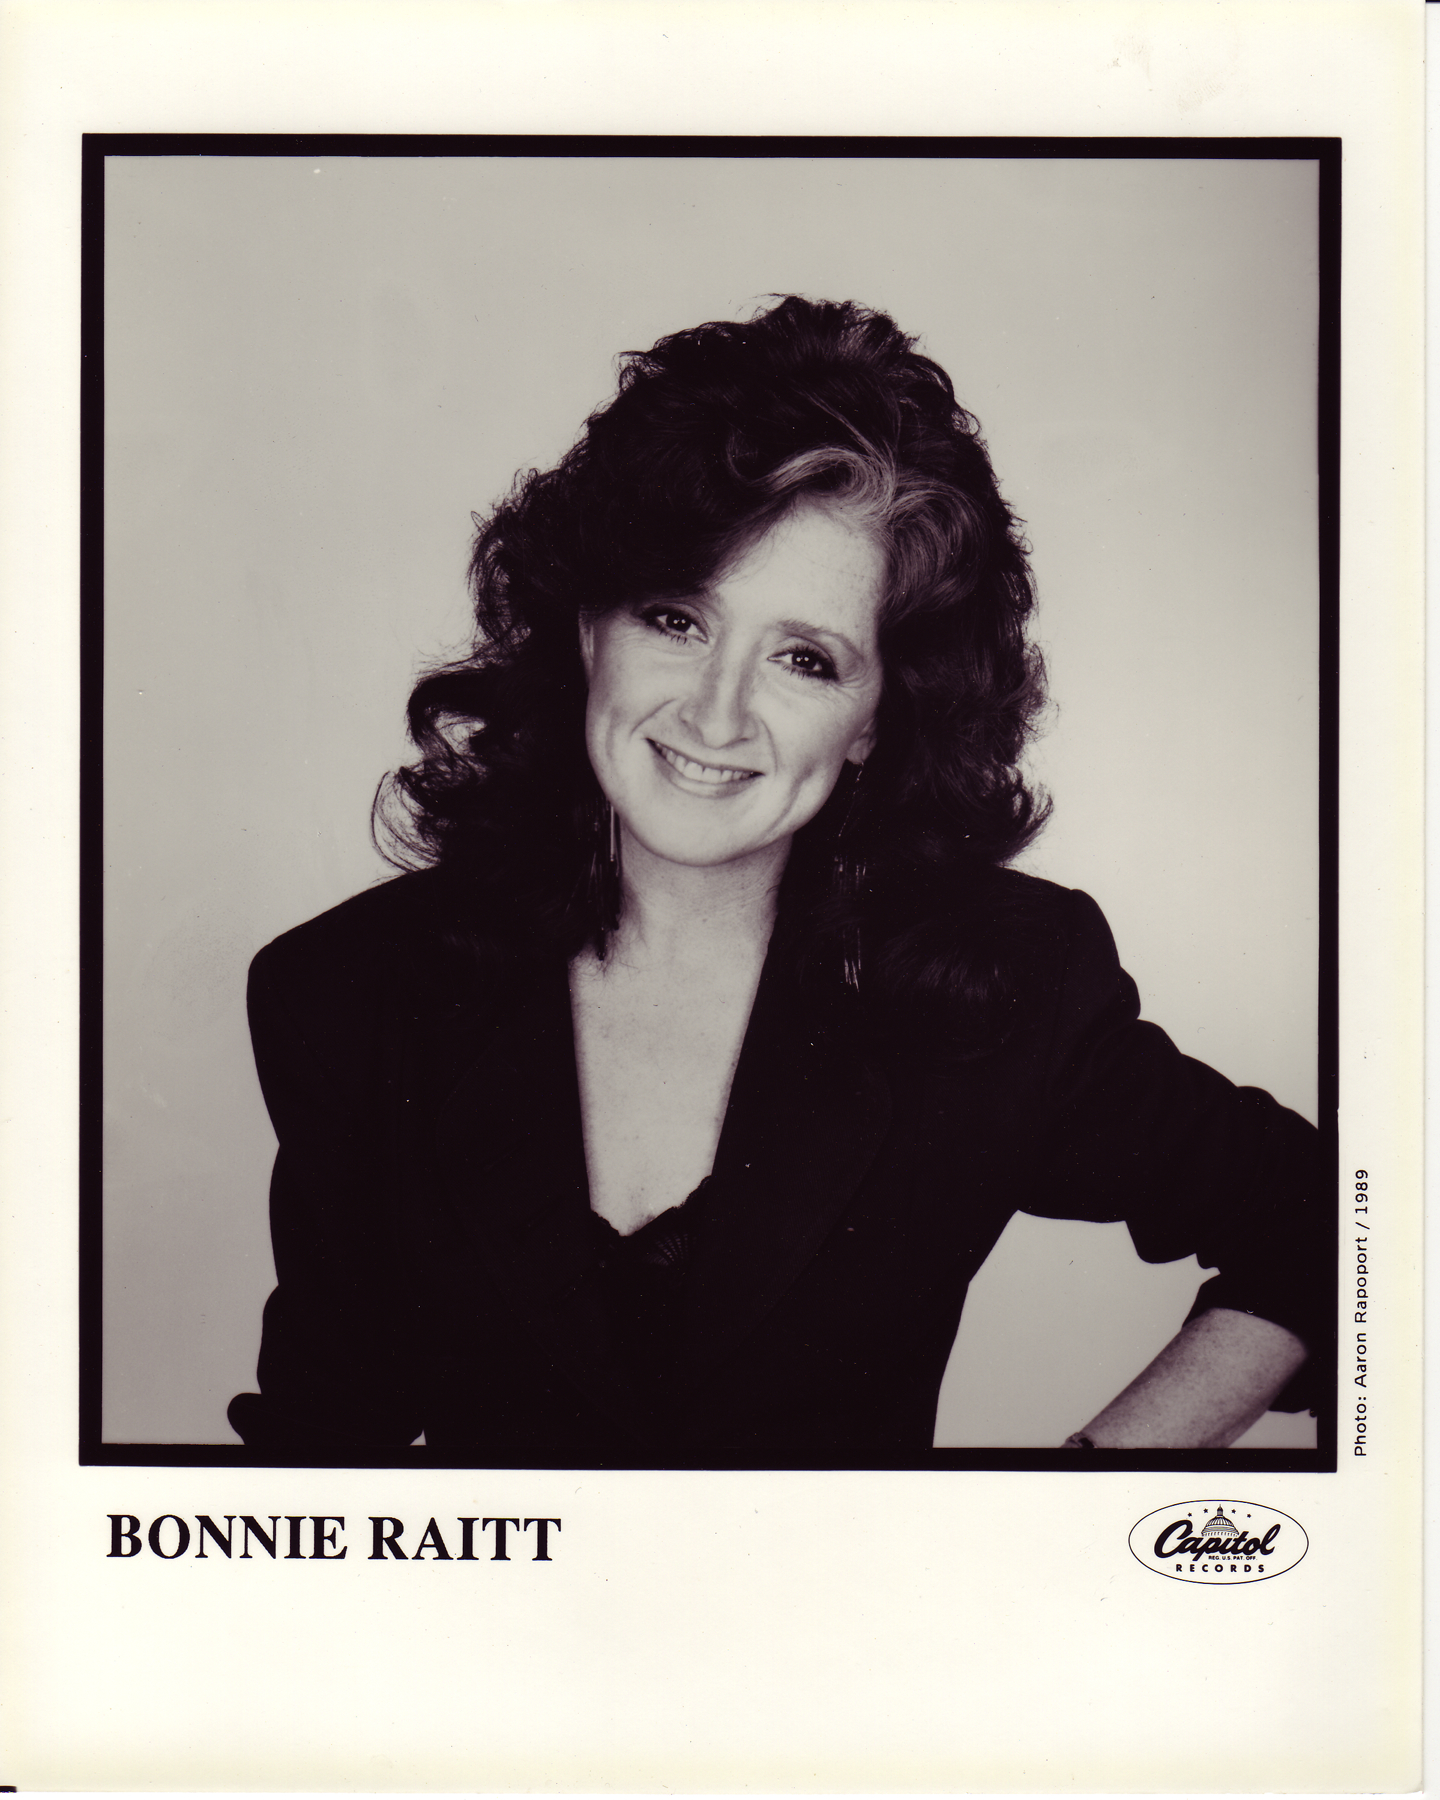 bonnie raitt tour 1980